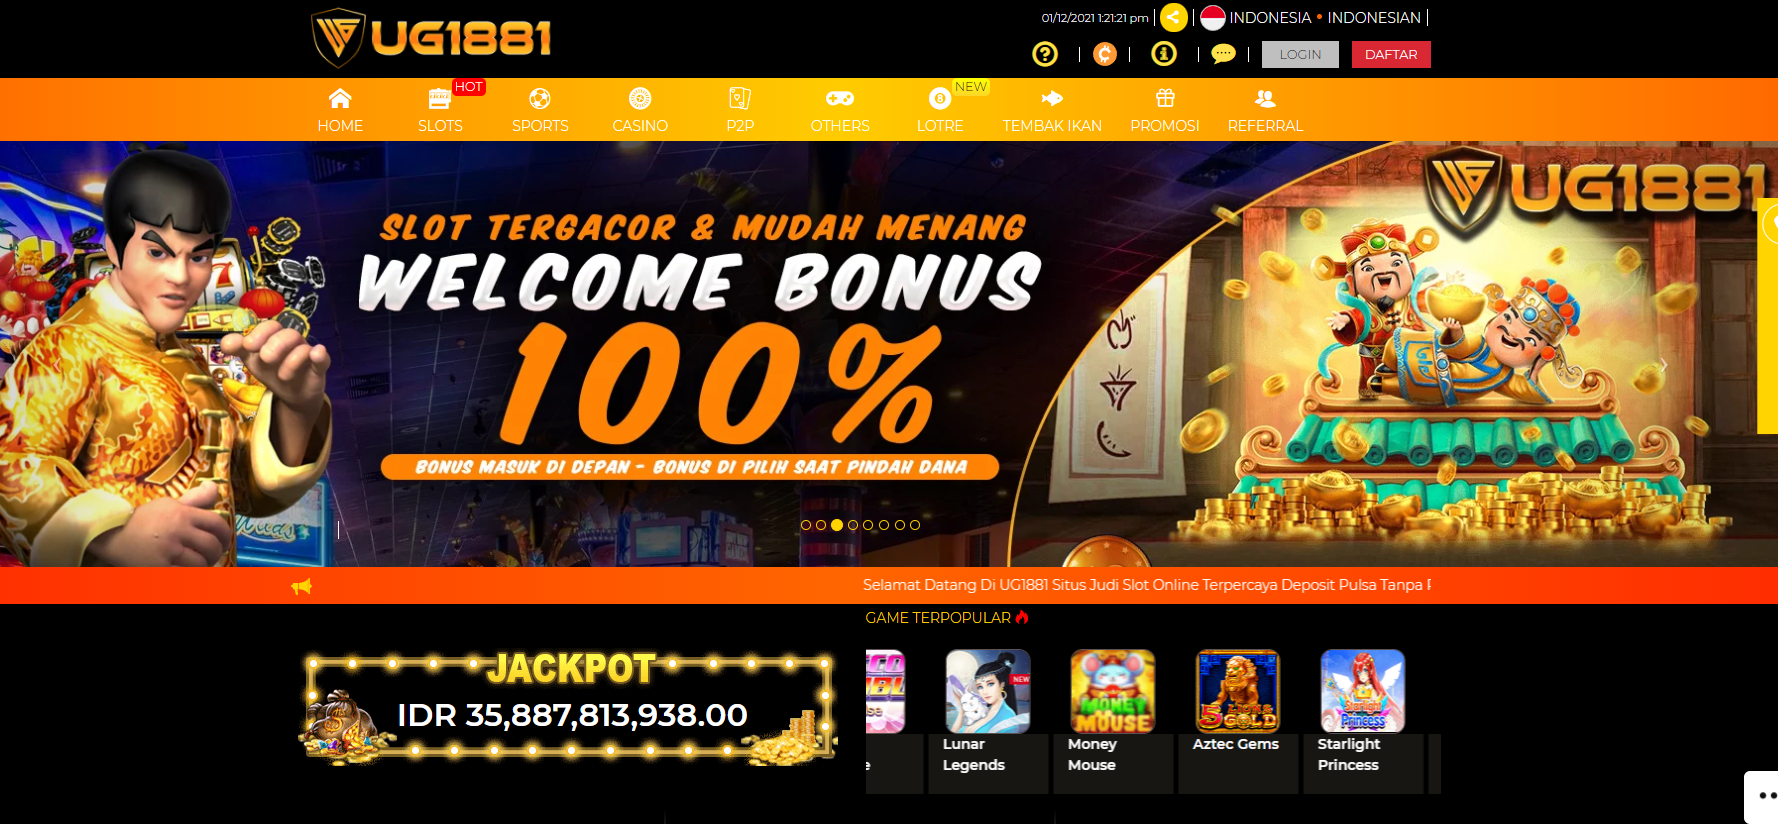 UG1881 Situs Judi Slot Online UG Deposit Pulsa Gacor Menang